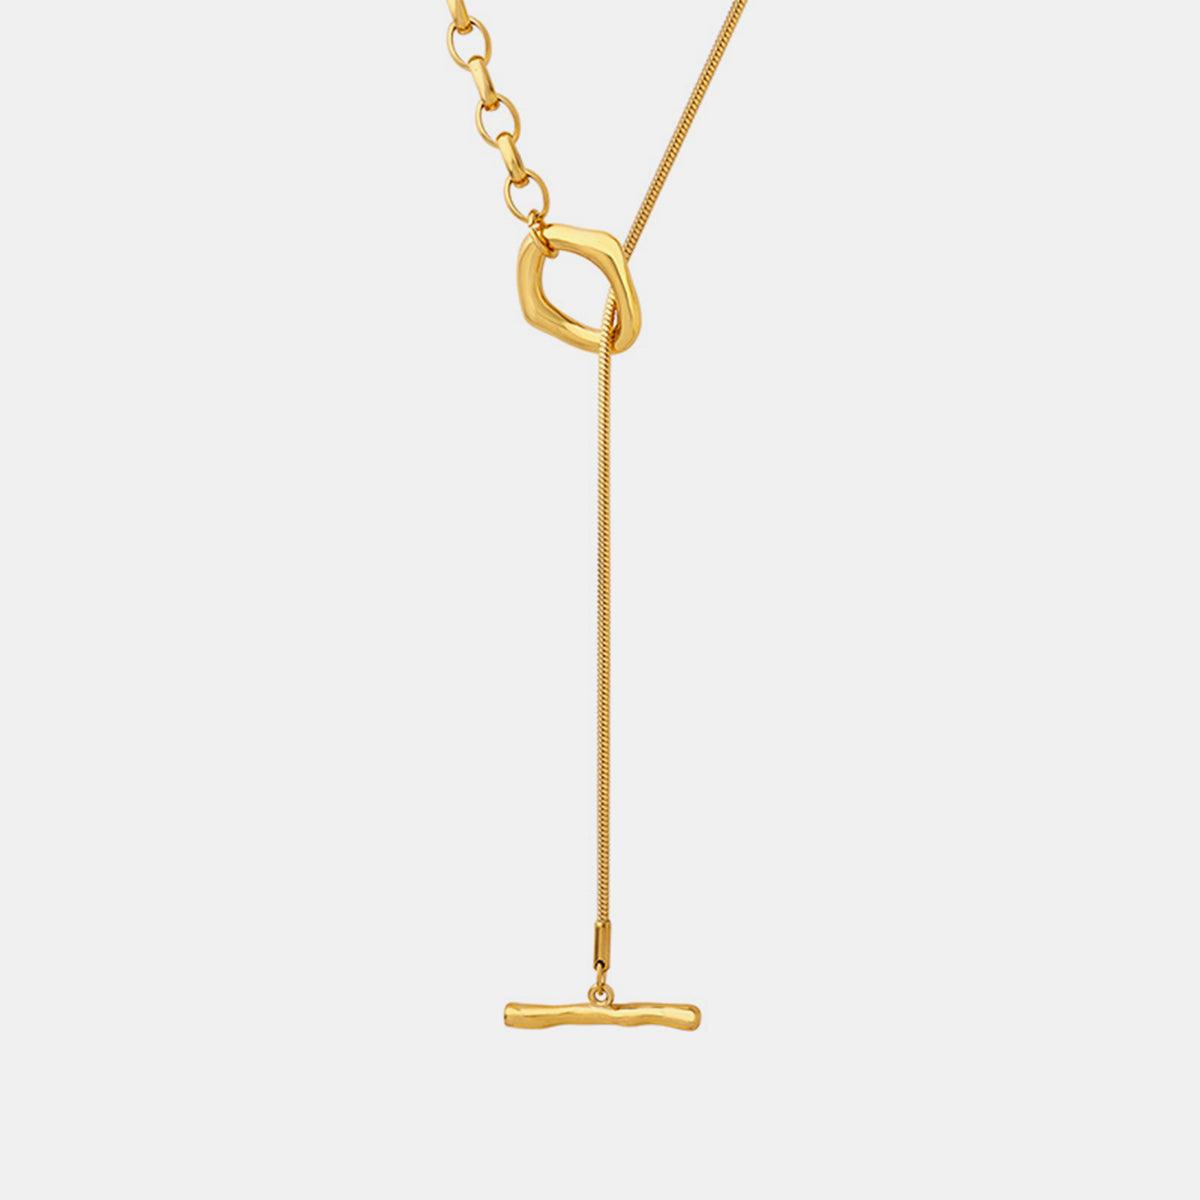 Titanium Steel Chain Necklace - Bona Fide Fashion